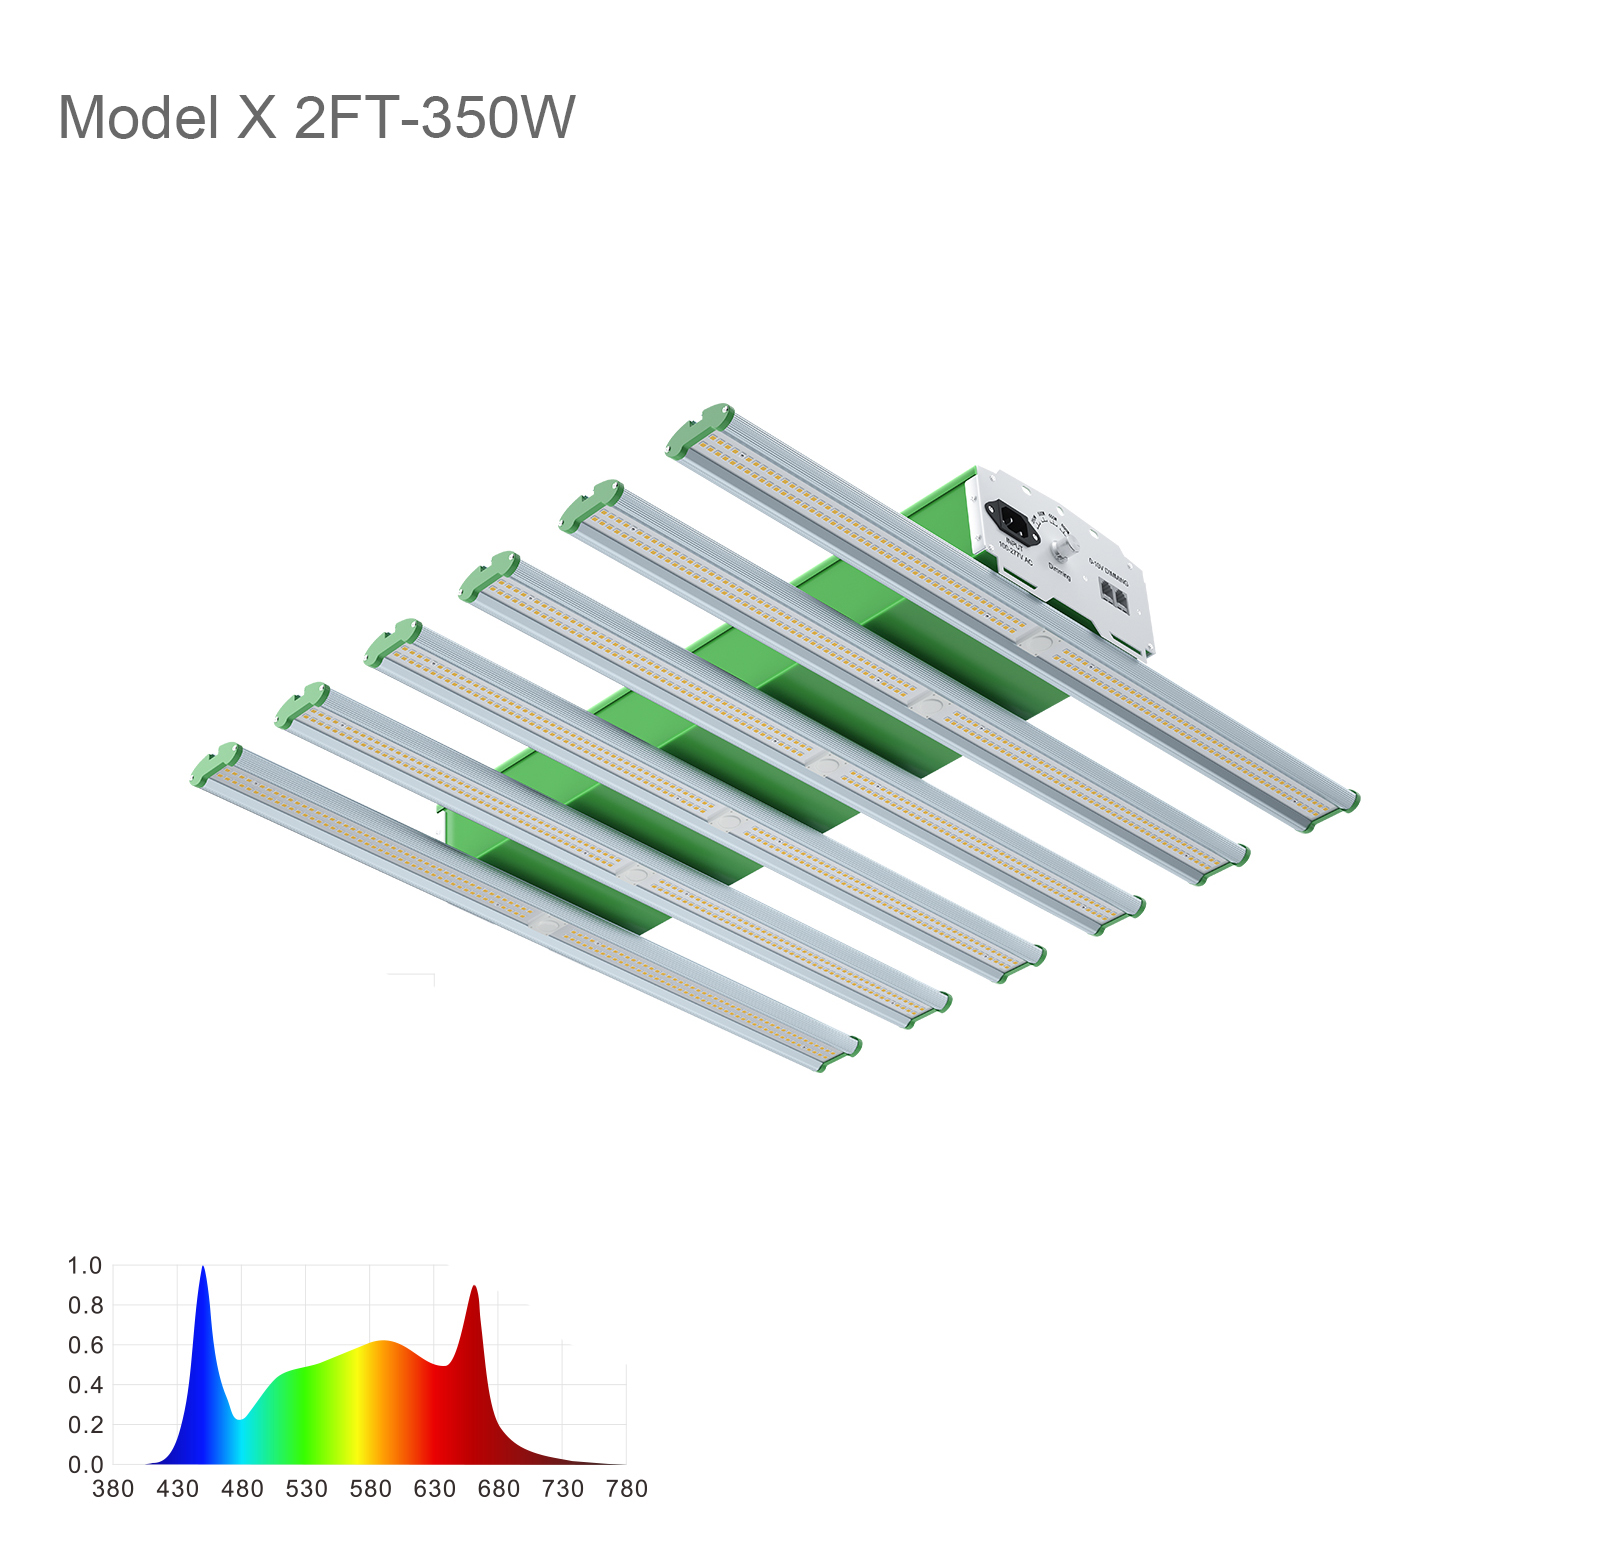 2FT Model X 6 Light Bars 350W Mid